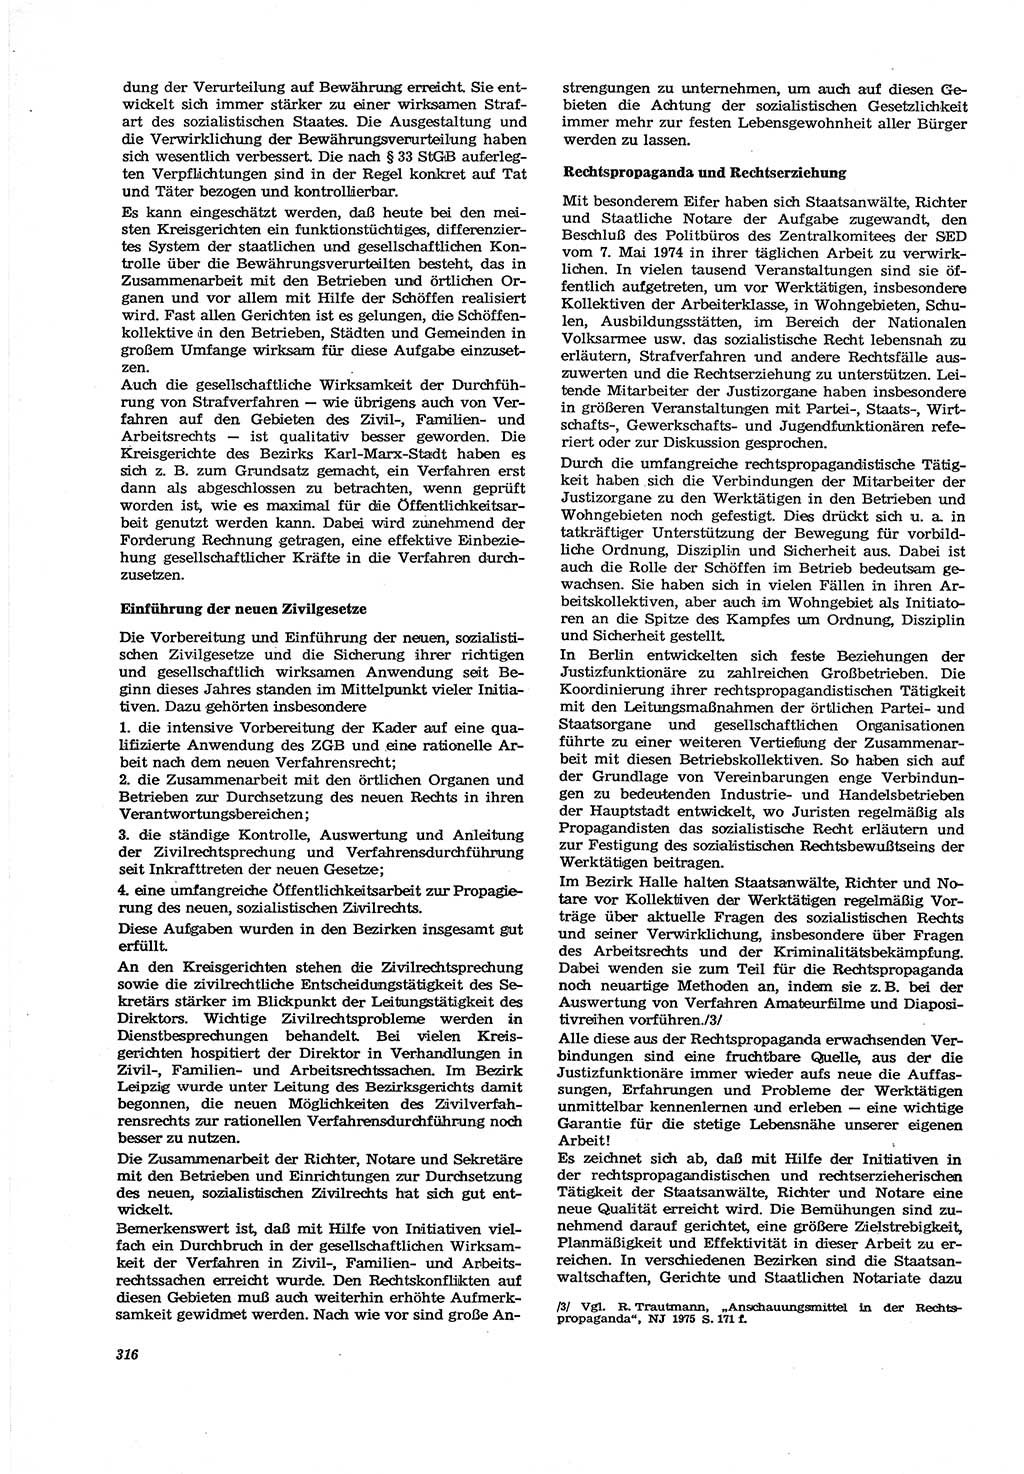 Neue Justiz (NJ), Zeitschrift für Recht und Rechtswissenschaft [Deutsche Demokratische Republik (DDR)], 30. Jahrgang 1976, Seite 316 (NJ DDR 1976, S. 316)